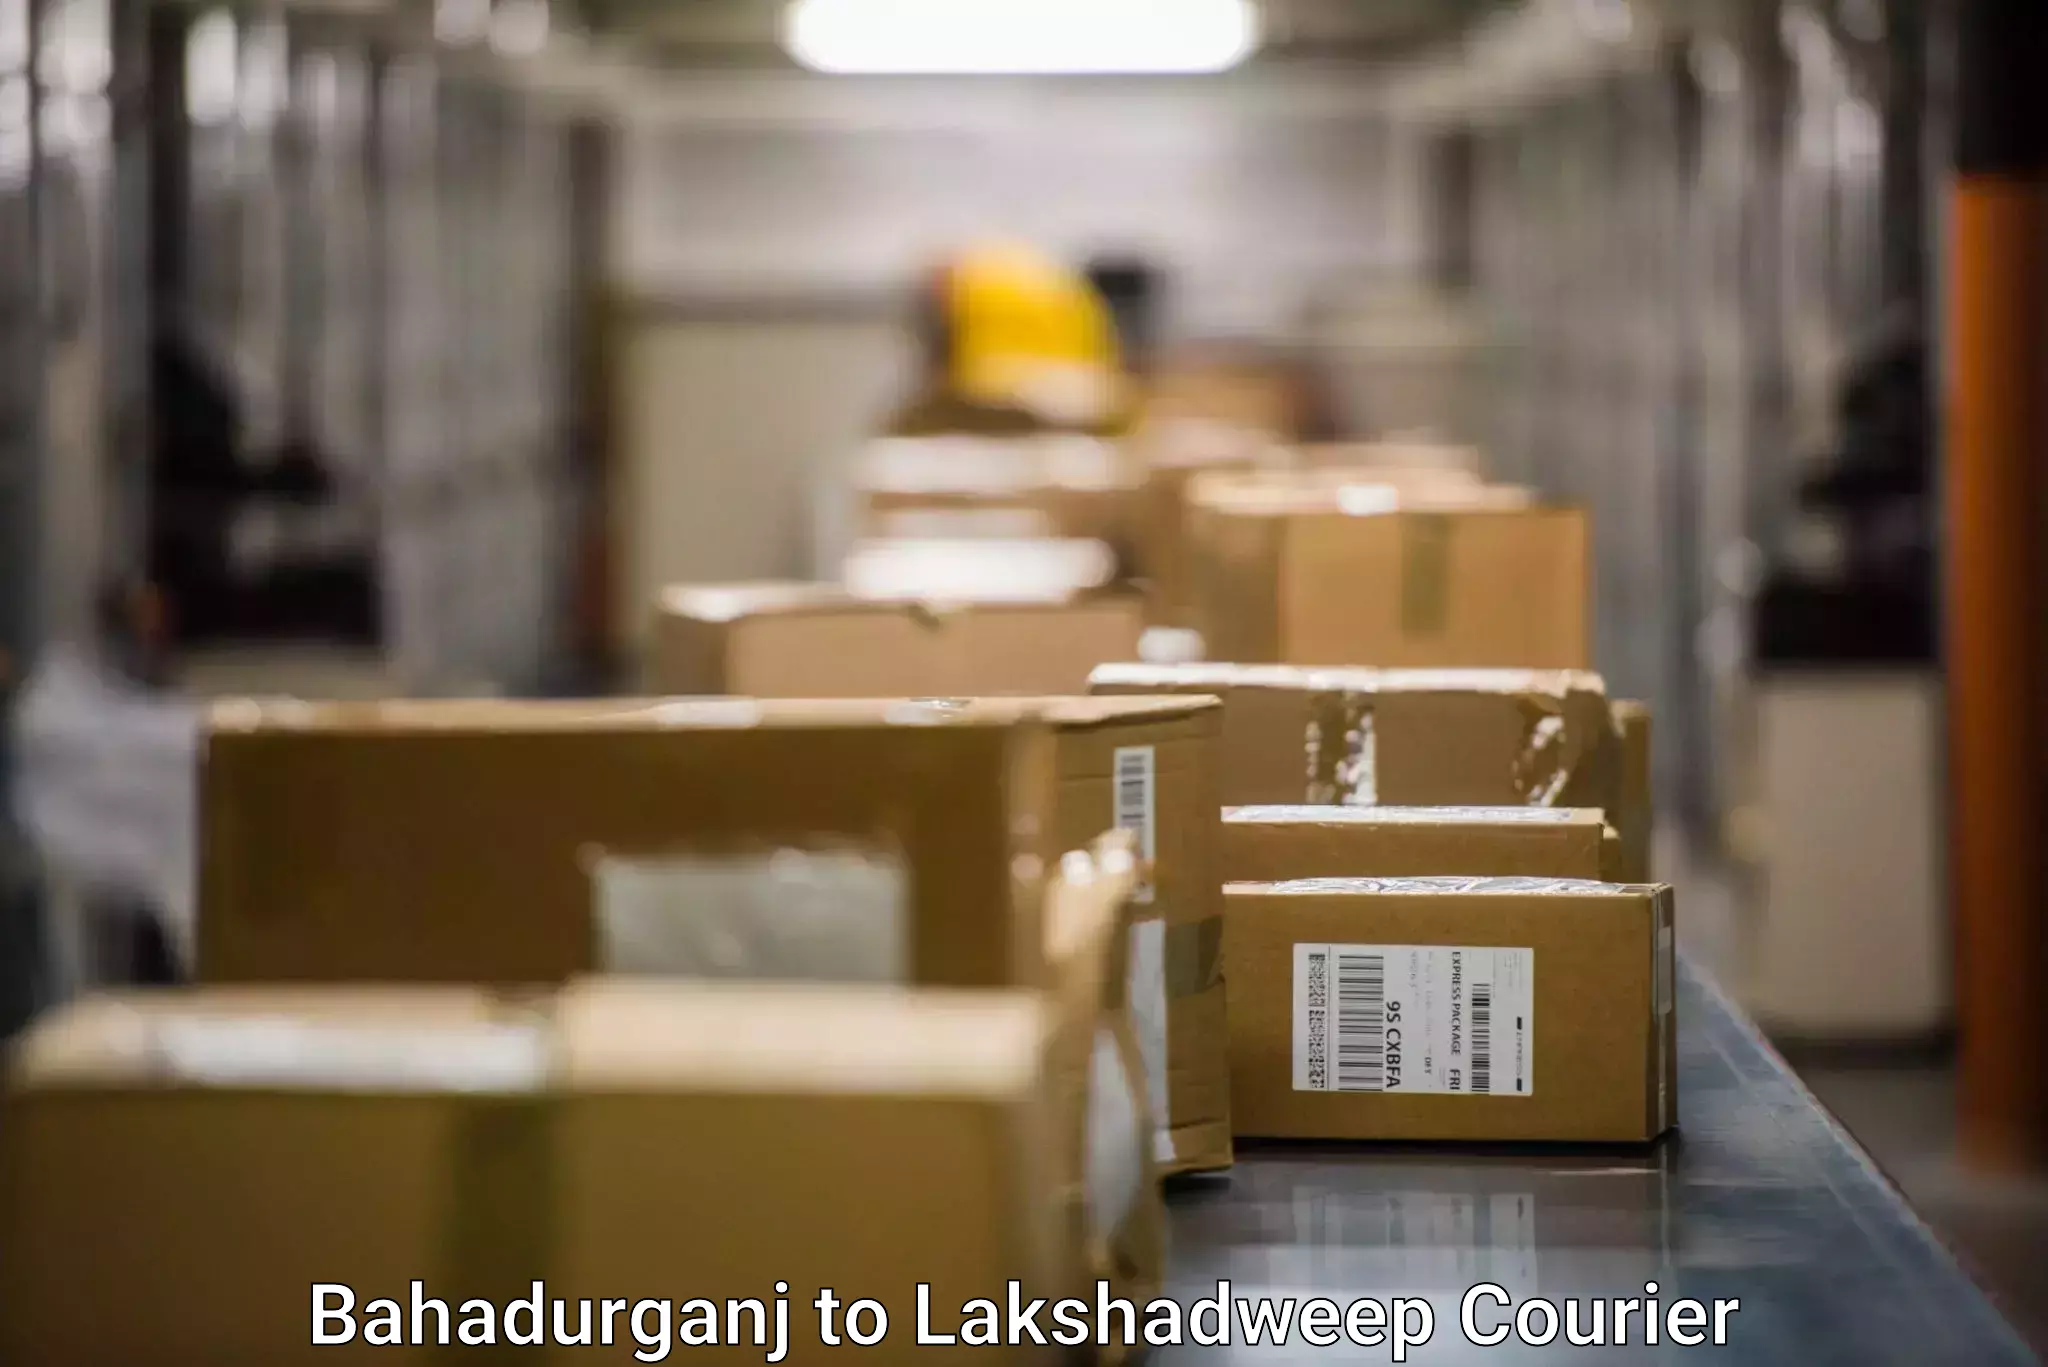 Express mail solutions Bahadurganj to Lakshadweep